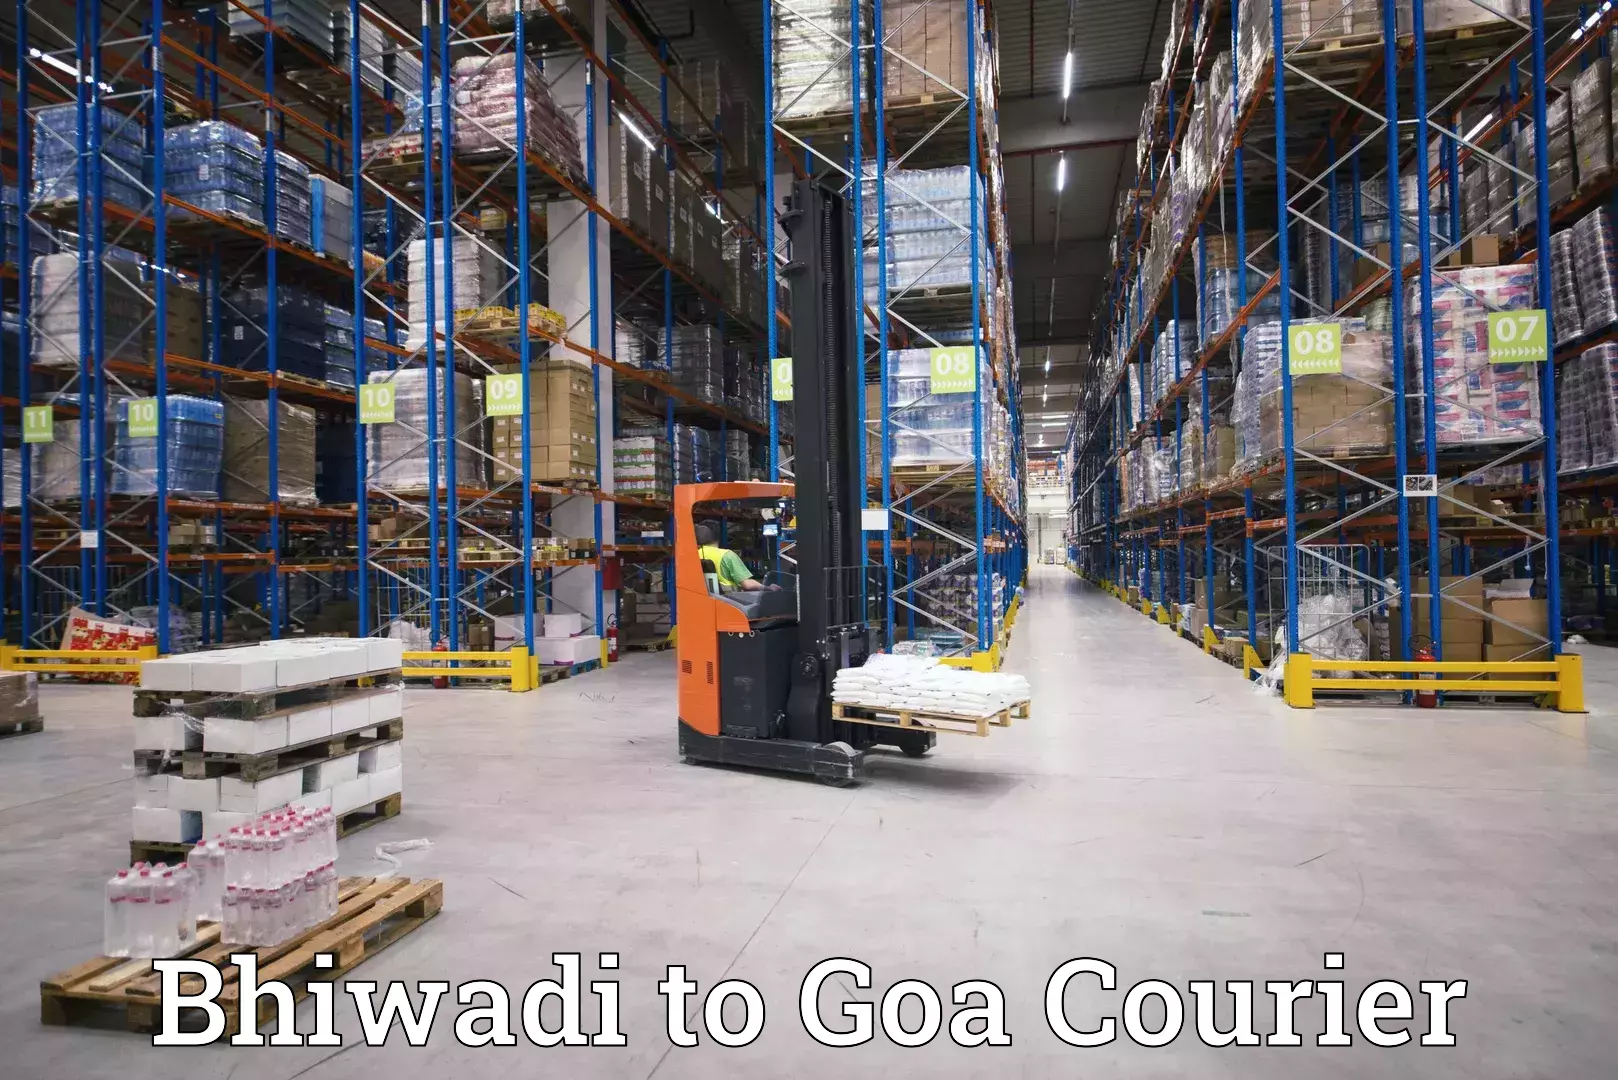 Door-to-door freight service Bhiwadi to Goa University